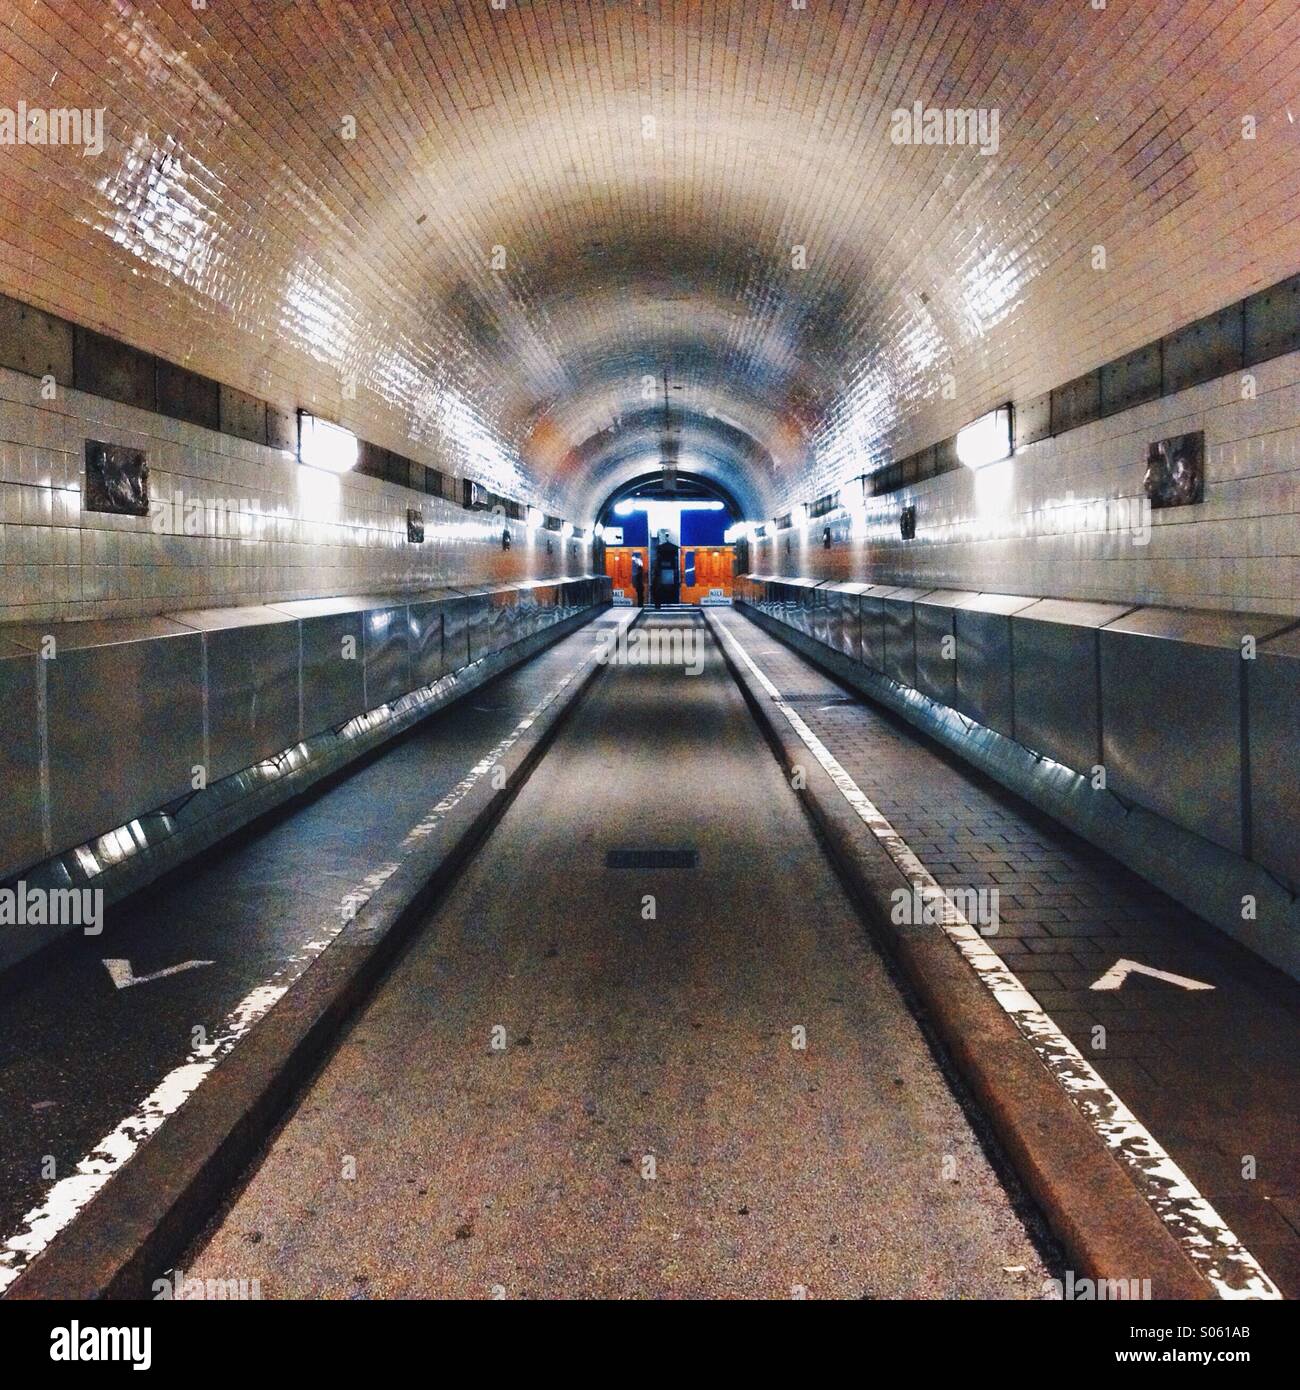 Alter Elbtunnel oder St. Pauli Elbtunnel (Deutsch: Alter Elbtunnel), Fußgänger und Fahrzeug-Tunnel eröffnet 1911 unter der Elbe, Hamburg, Deutschland Stockfoto